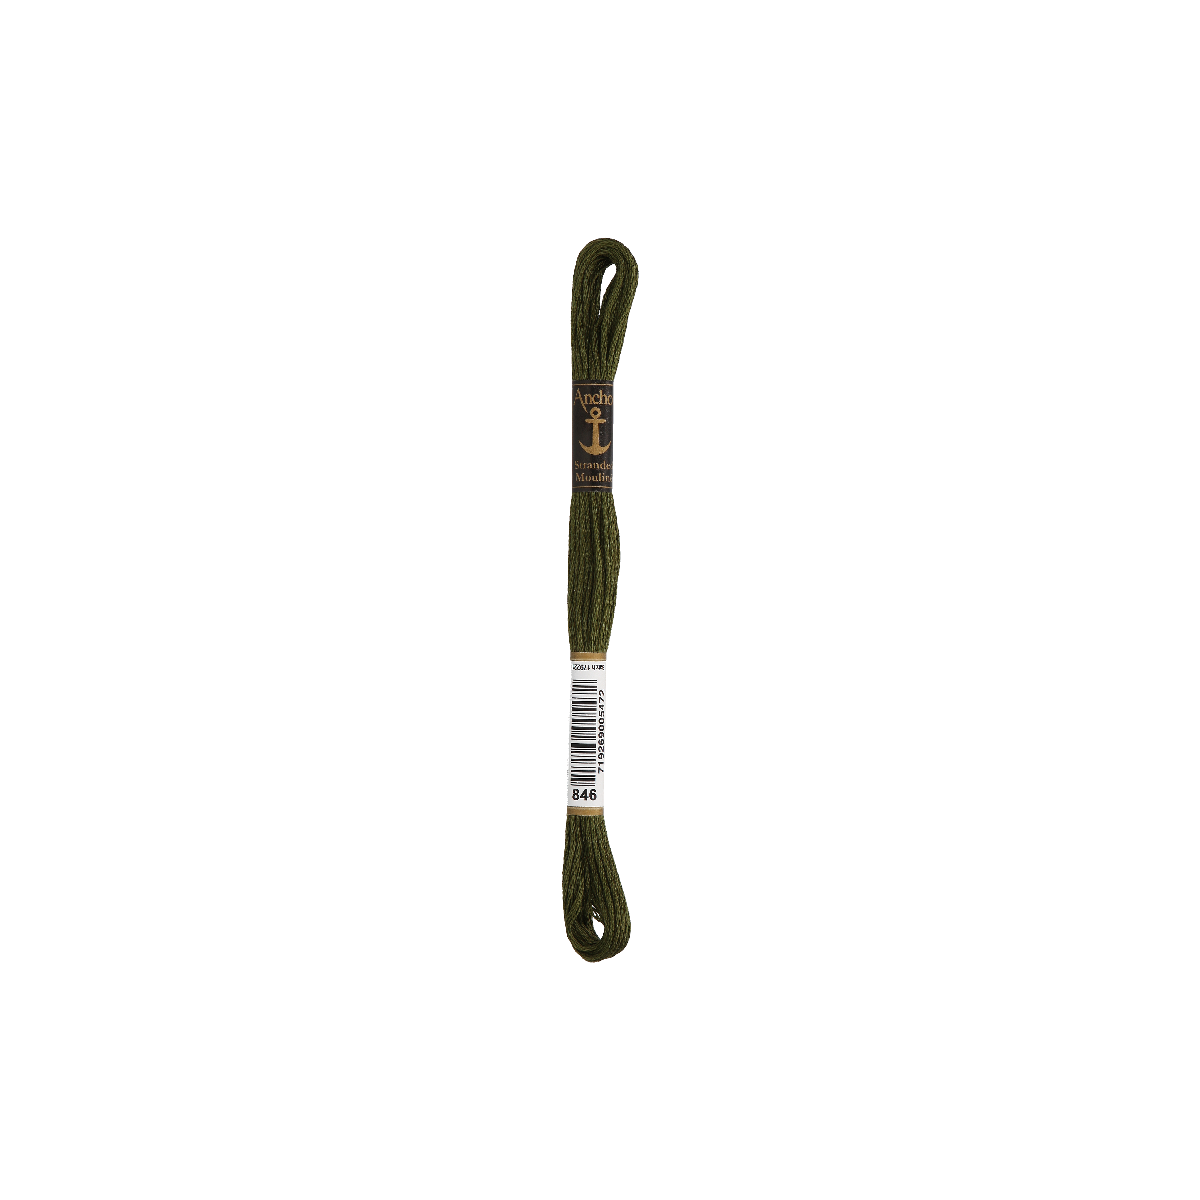 Anchor Sticktwist 8m, brughiera, cotone, colore 846, 6 fili